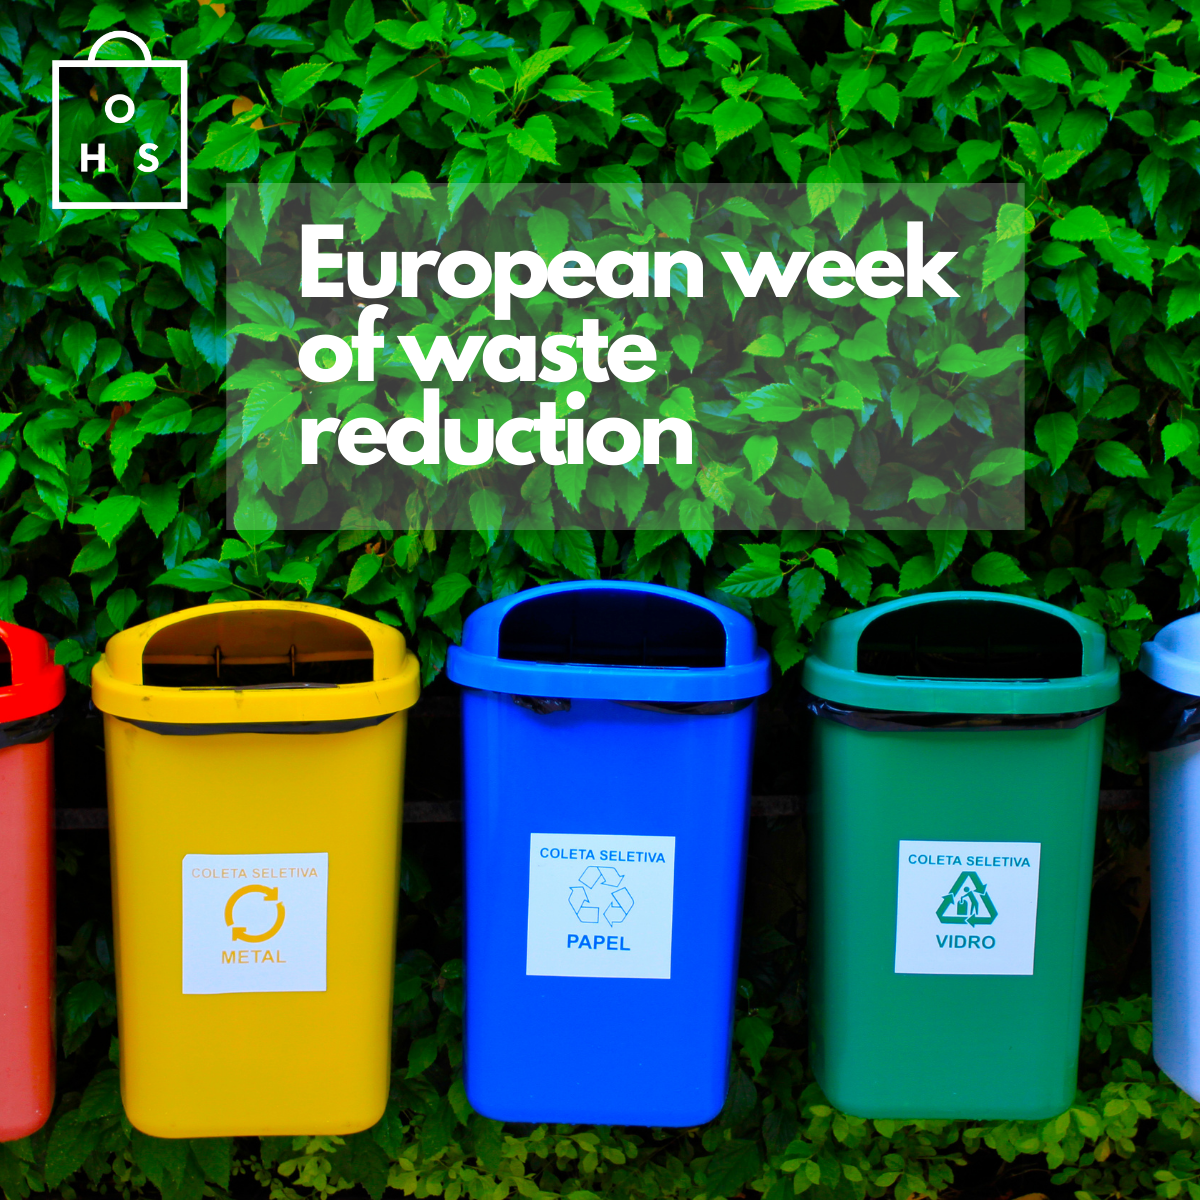 European Waste Reduction Week